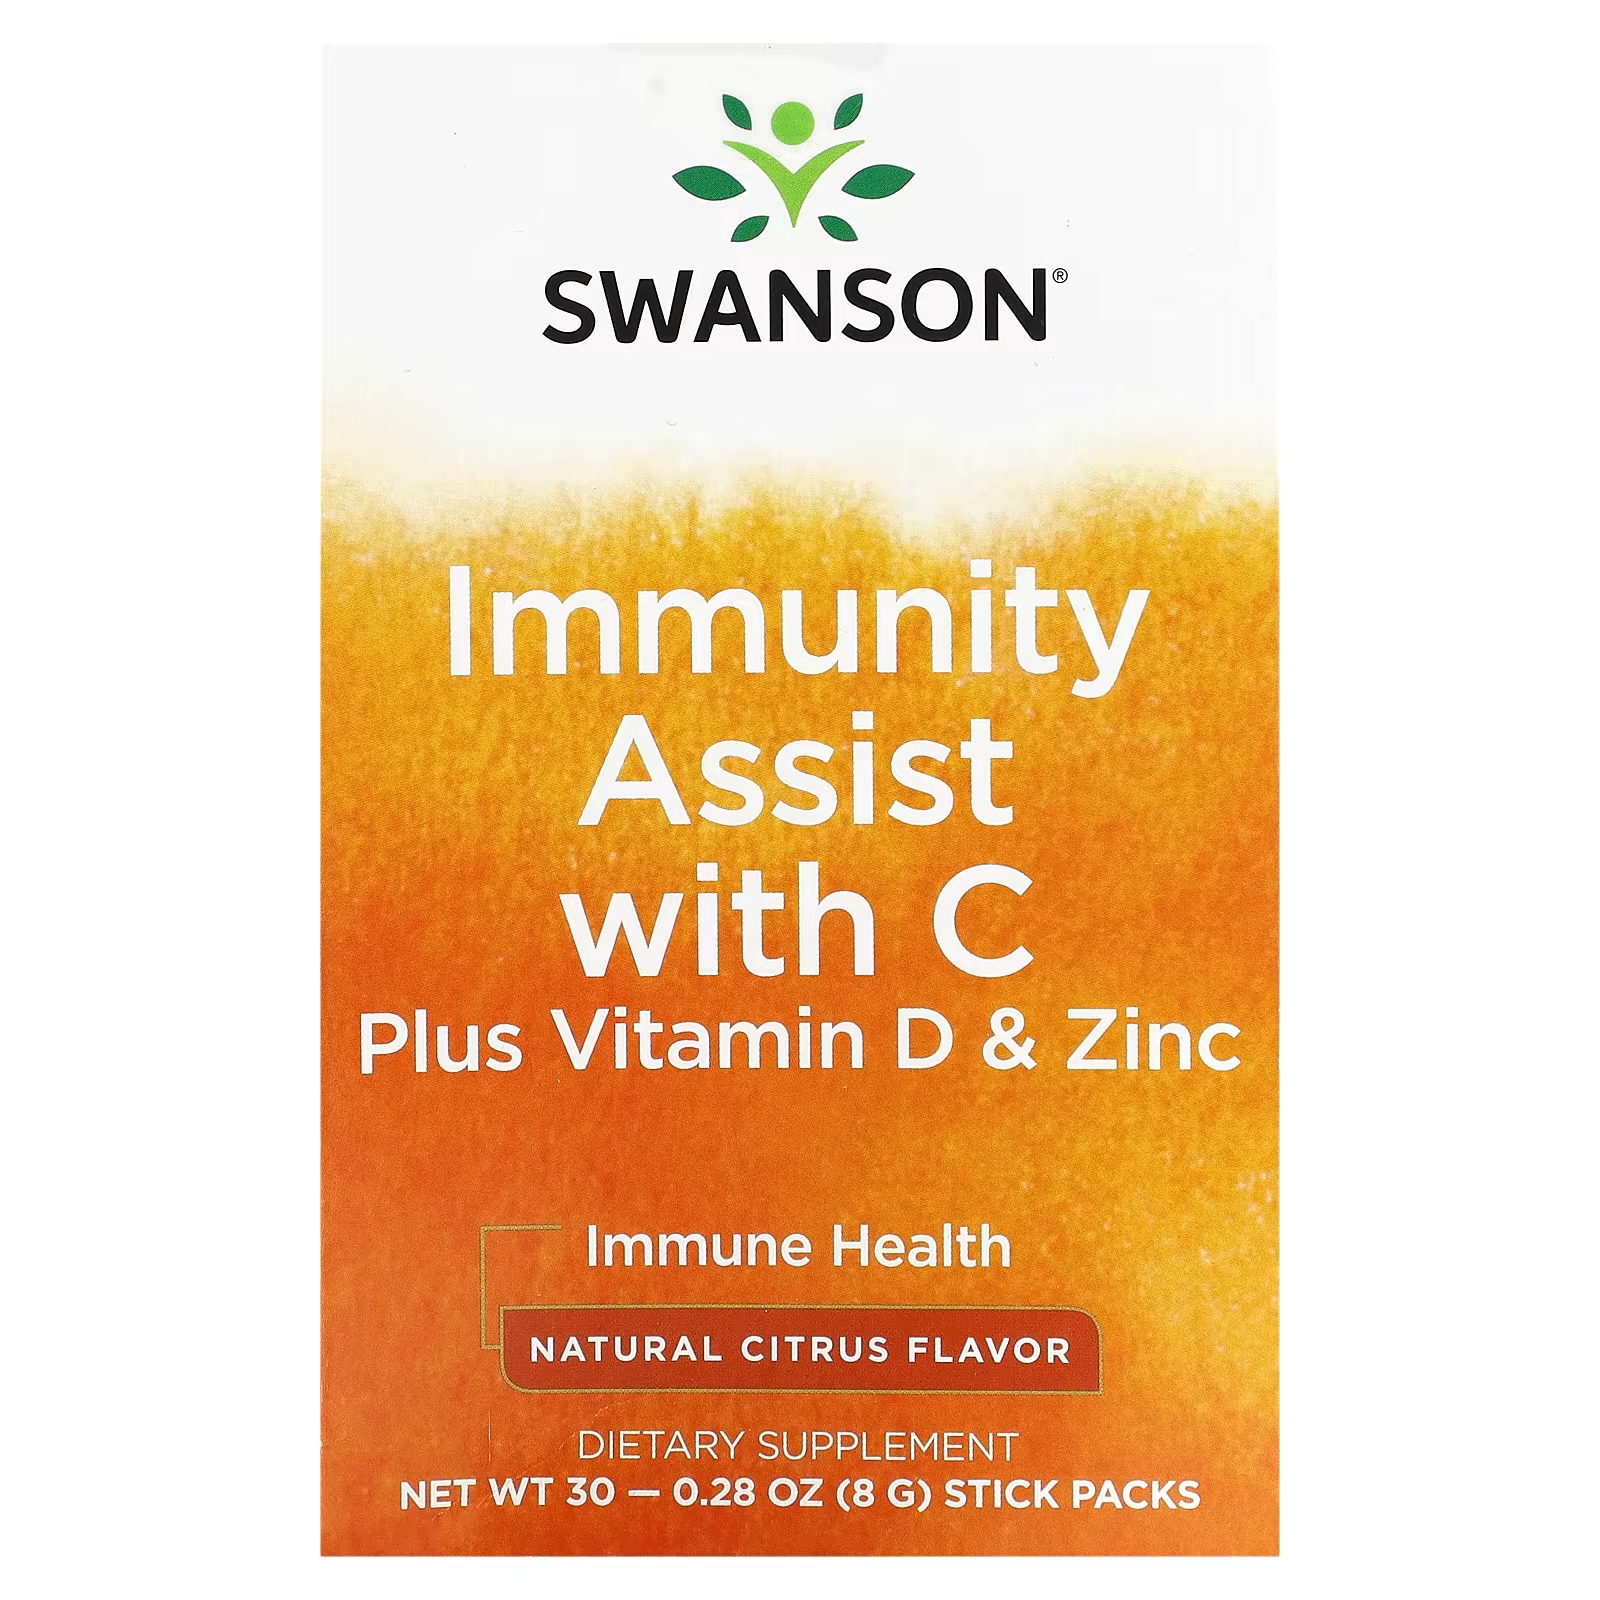 Пищевая добавка Swanson Immunity Assist с витамином C, витамином D и цинком, 30 пакетиков по 8 г